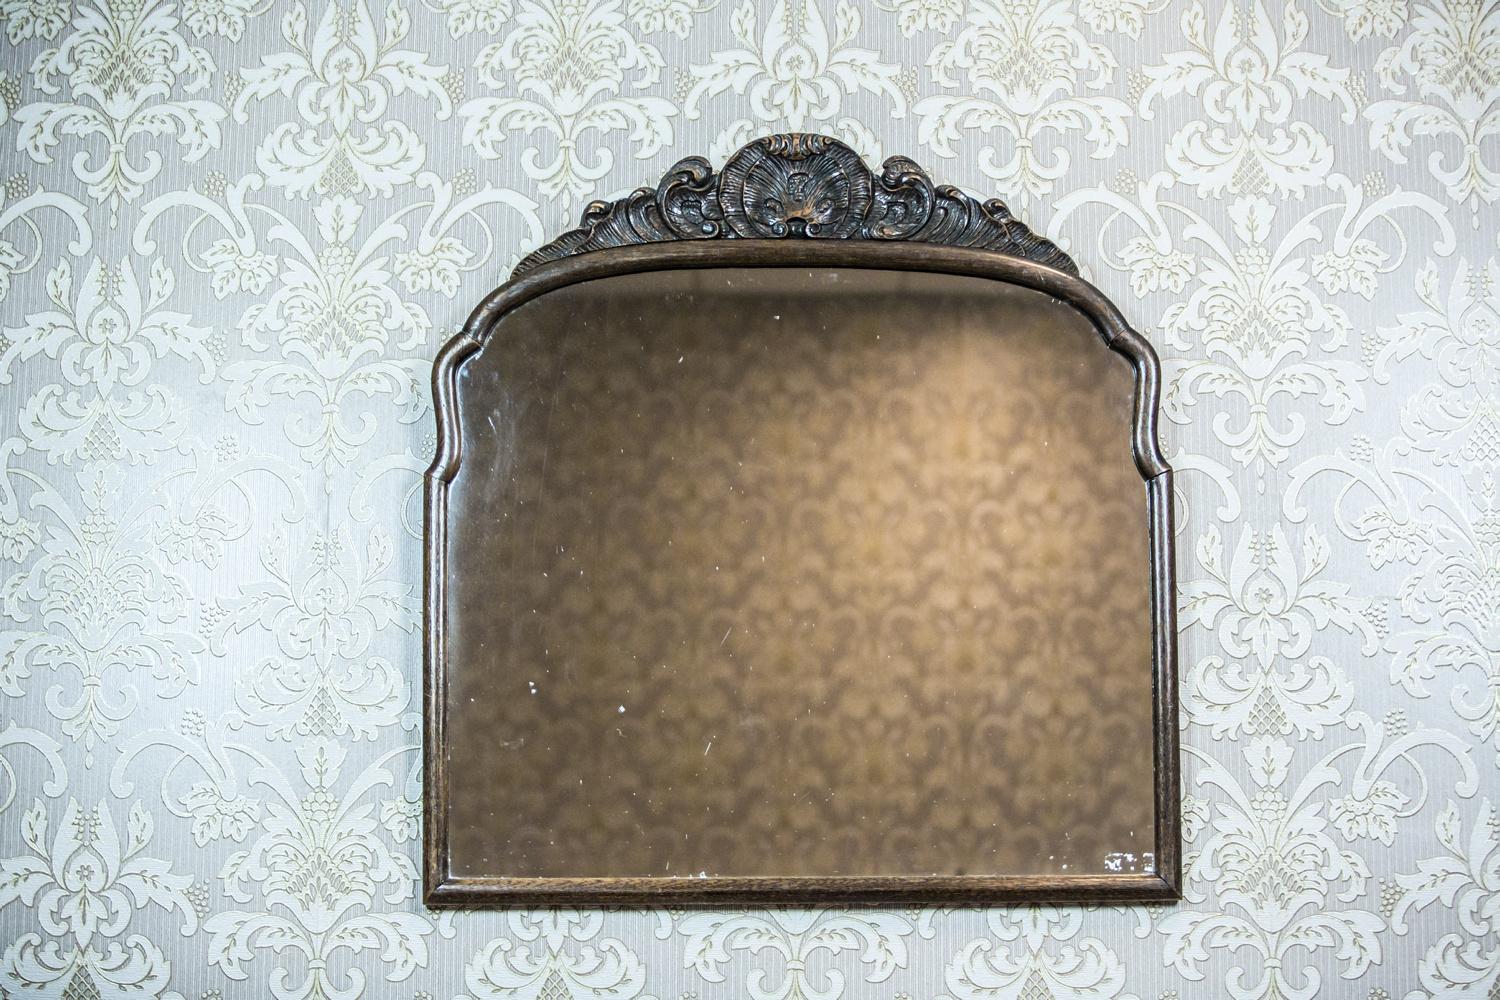 Wir präsentieren Ihnen diesen Spiegel aus dem späten 19. Jahrhundert, der in einem Holzrahmen im Neo-Rokoko-Stil eingefasst ist.
Die Form des Spiegels ist ähnlich wie ein Quadrat. Der Rahmen ist mit einer halbplastischen Dekoration mit dem Motiv